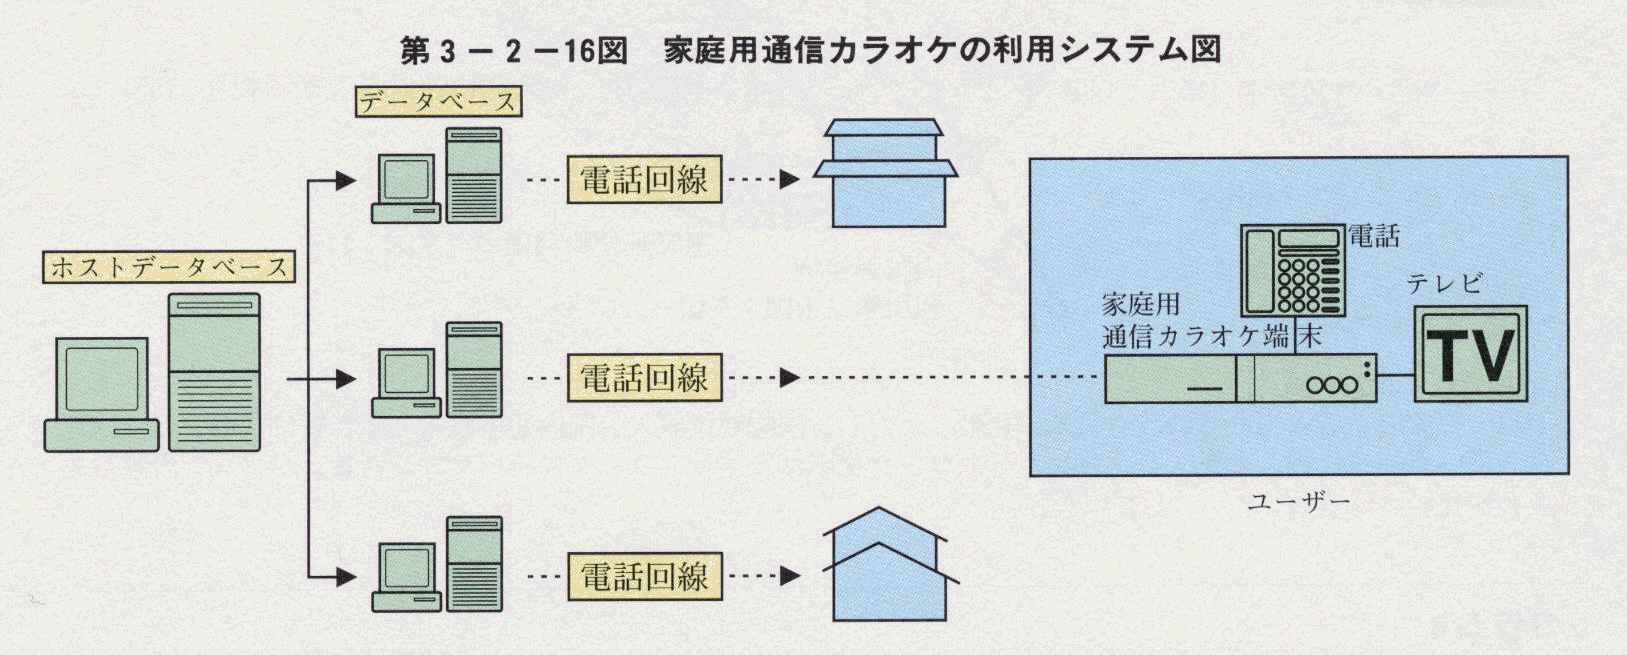 第3-2-16図 家庭用通信カラオケの利用システム図